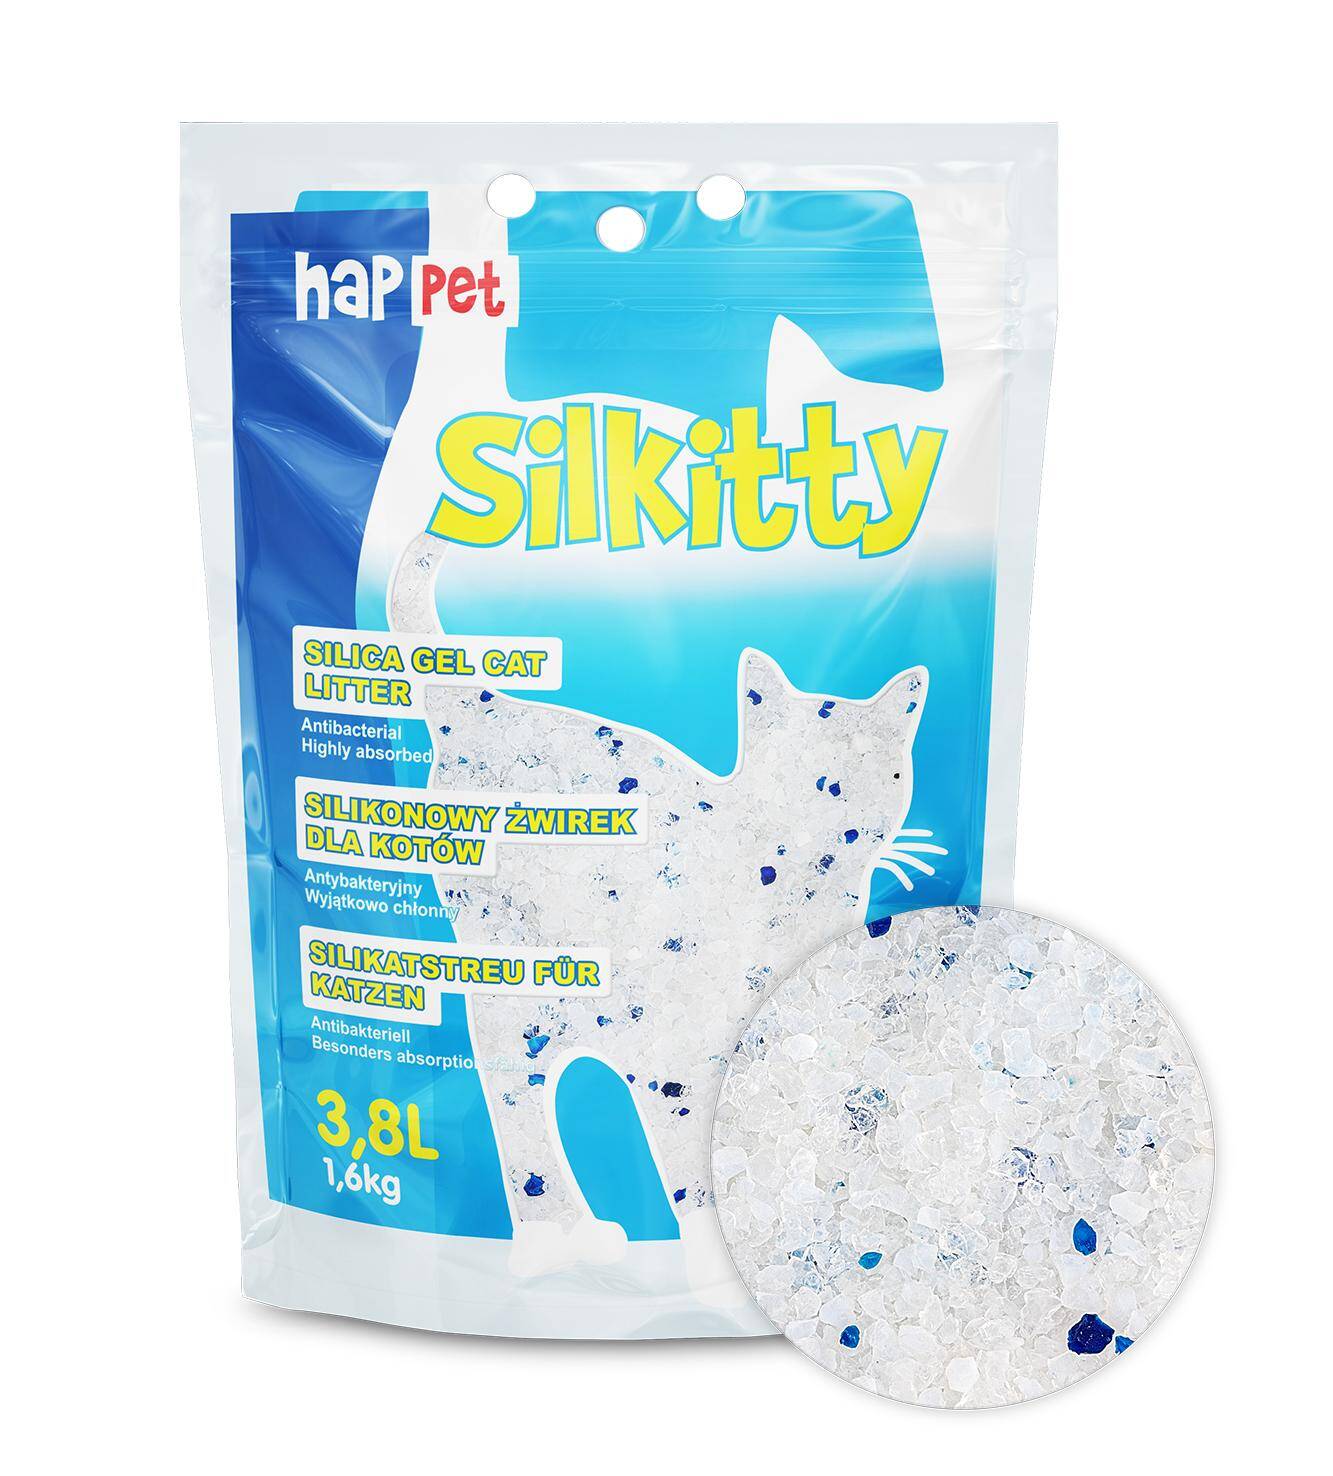 Silkitty Sillica Gel Cat Litter - Happet (Photo 6)